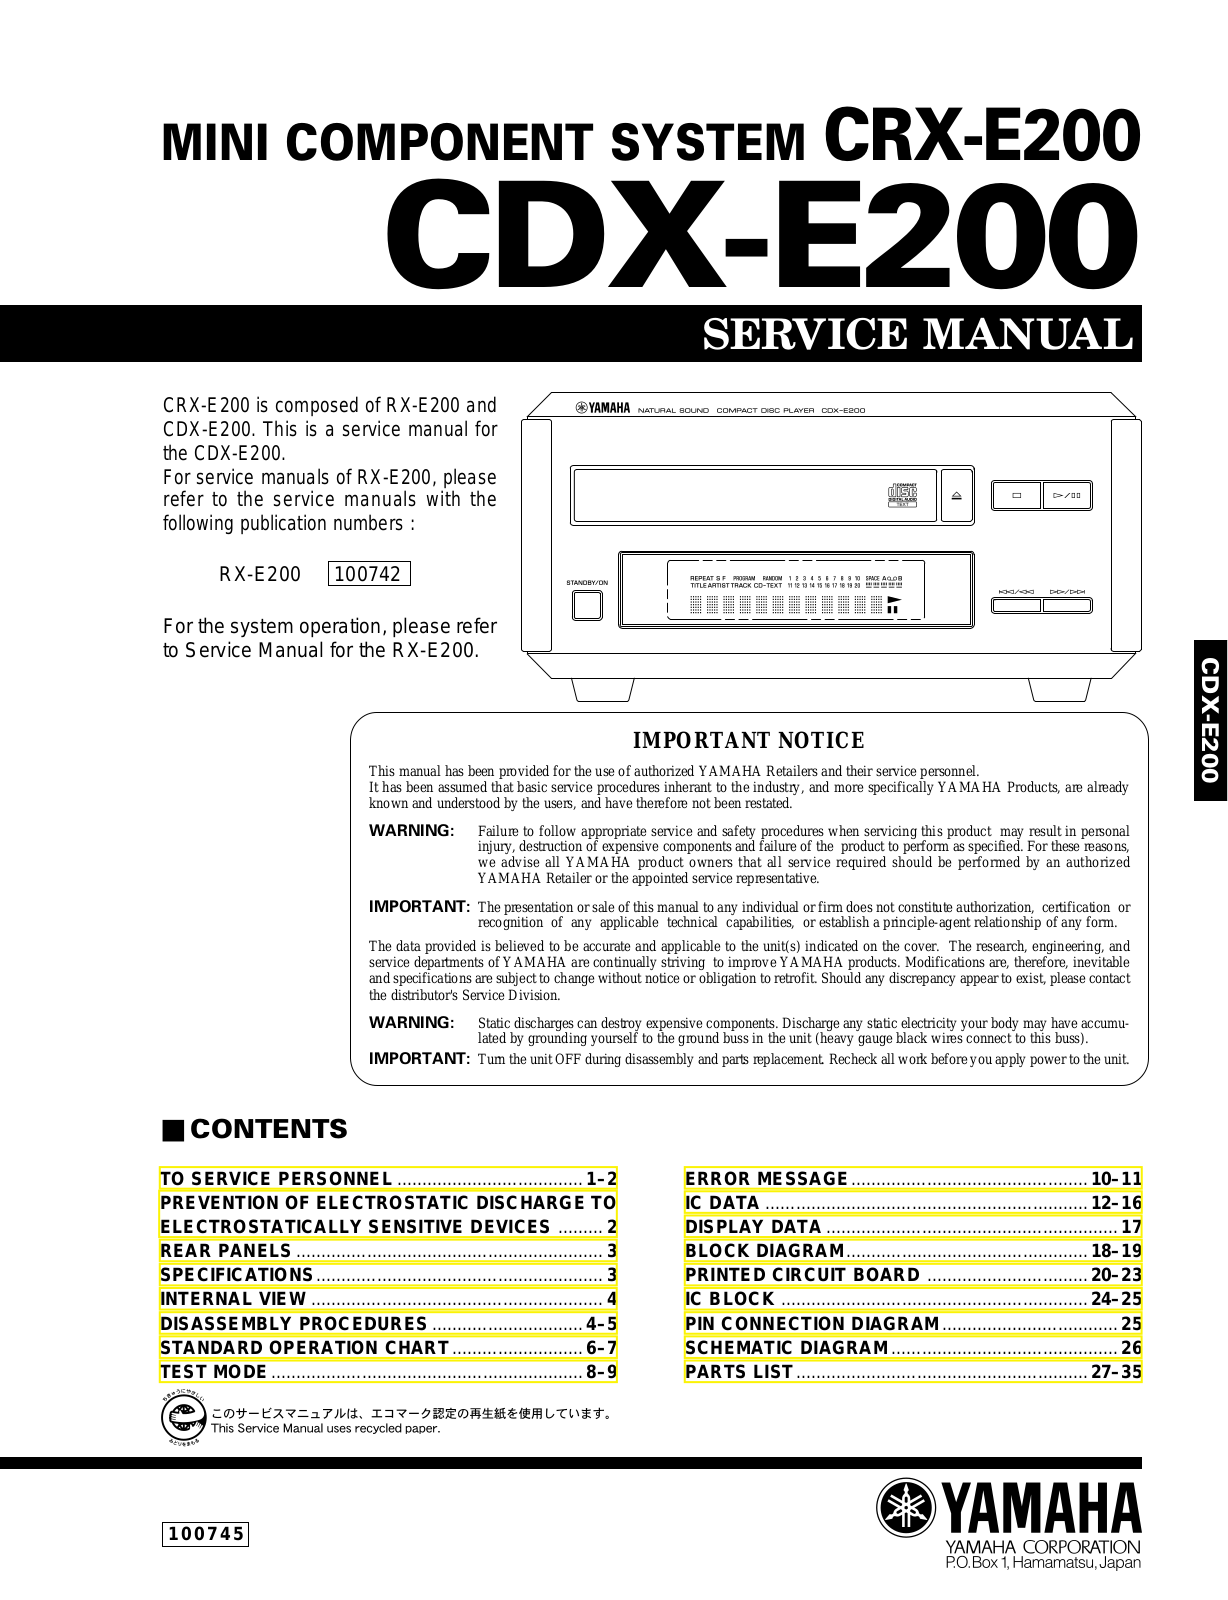 Yamaha CDXE-200, CRXE-200 Service manual